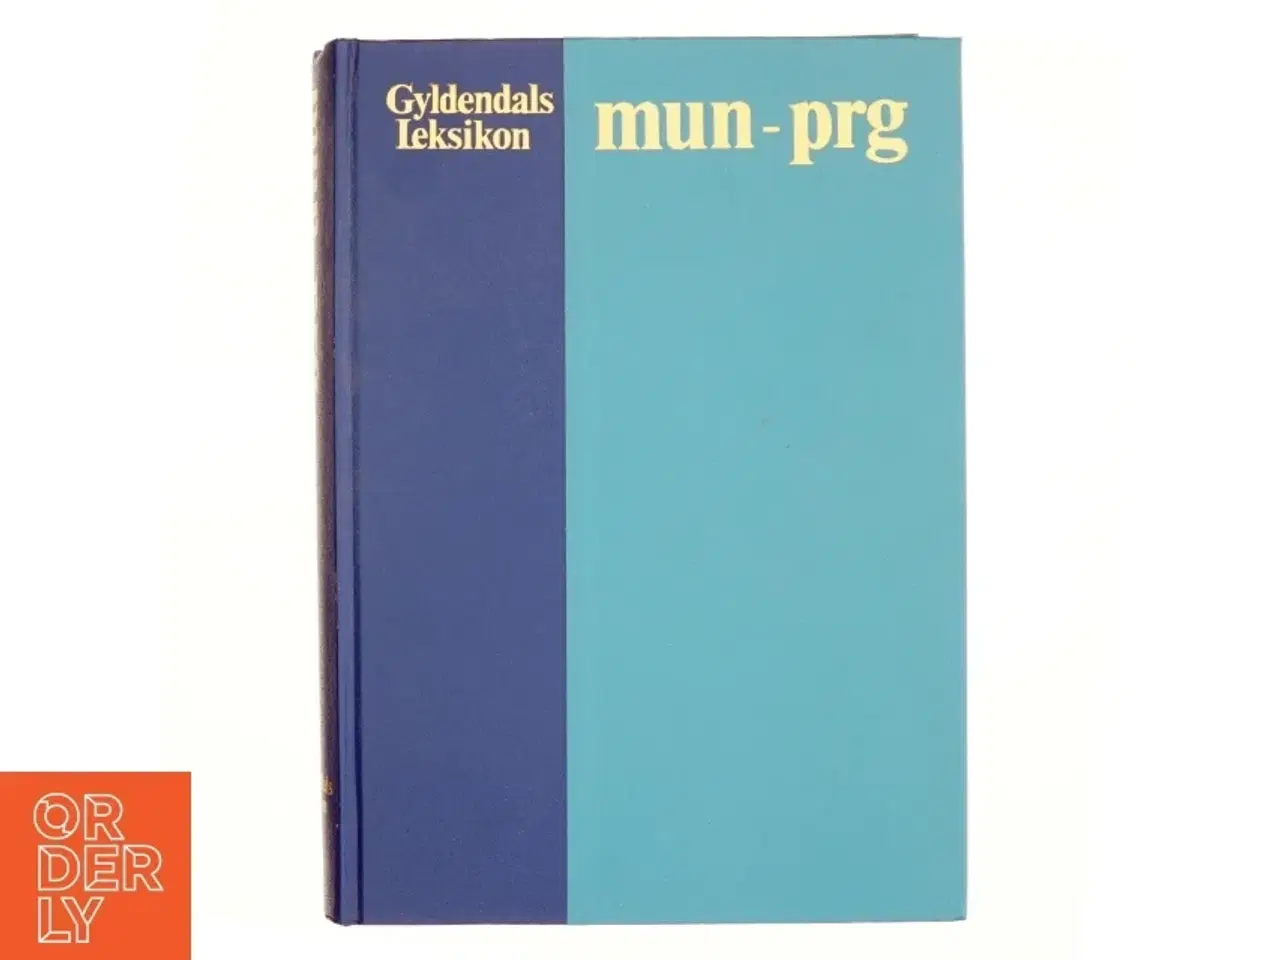 Billede 1 - Gyldendals leksikon mun-prg